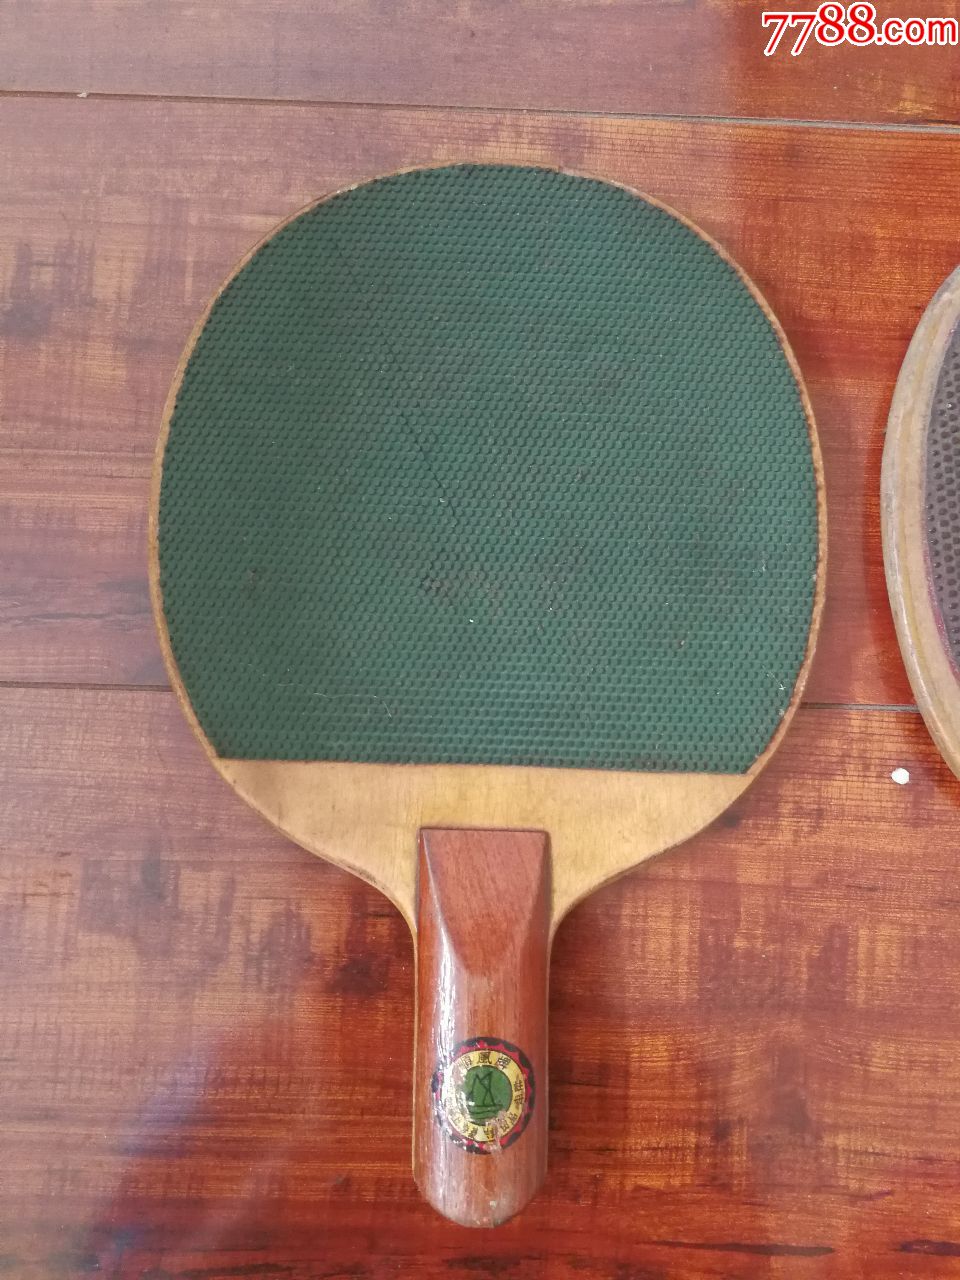 两个老式乒乓球拍(b)